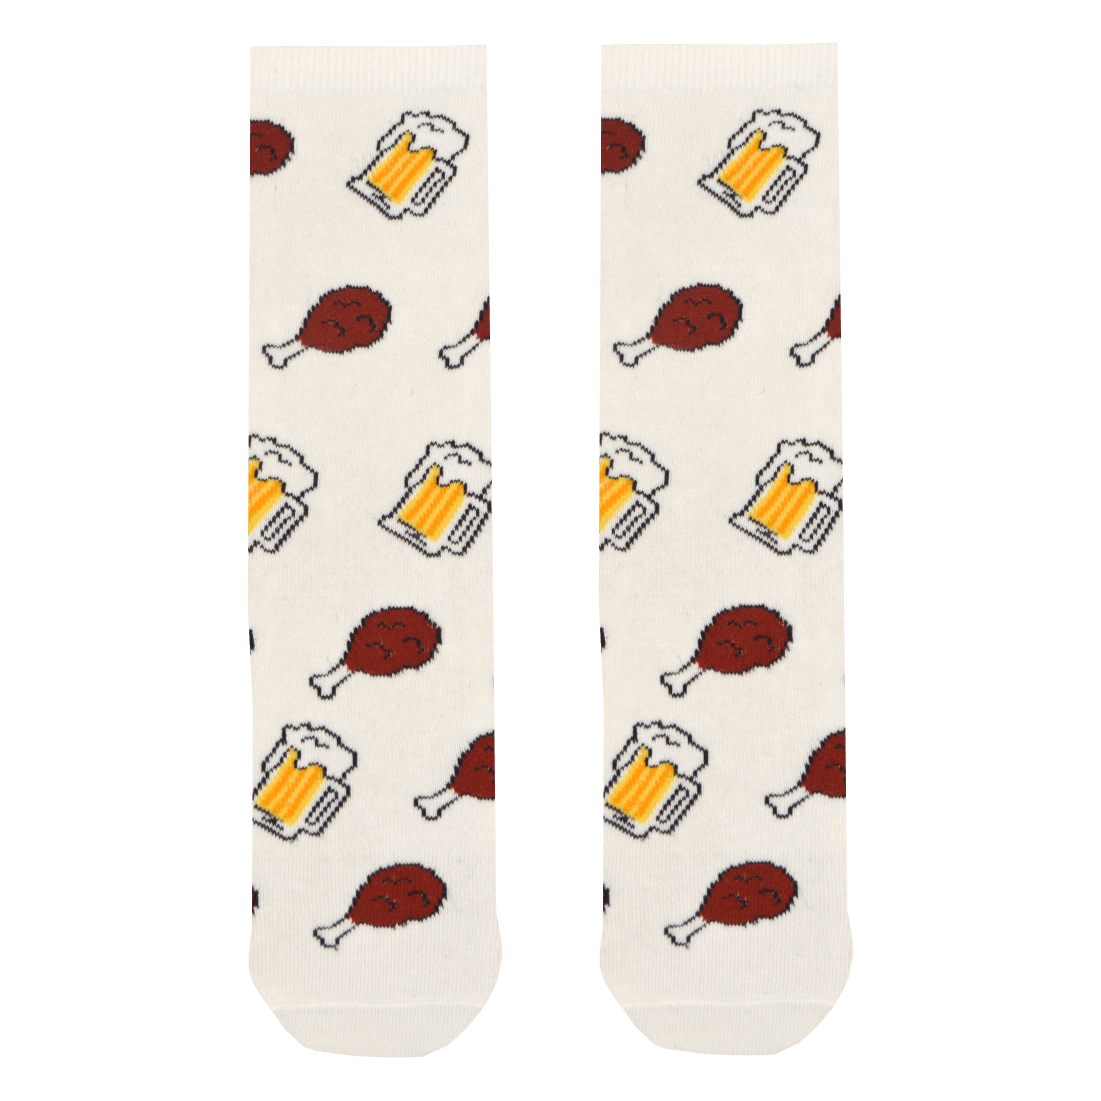 Medias Locas calcetines divertidos de diseño de pollito y chela Freaky Socks